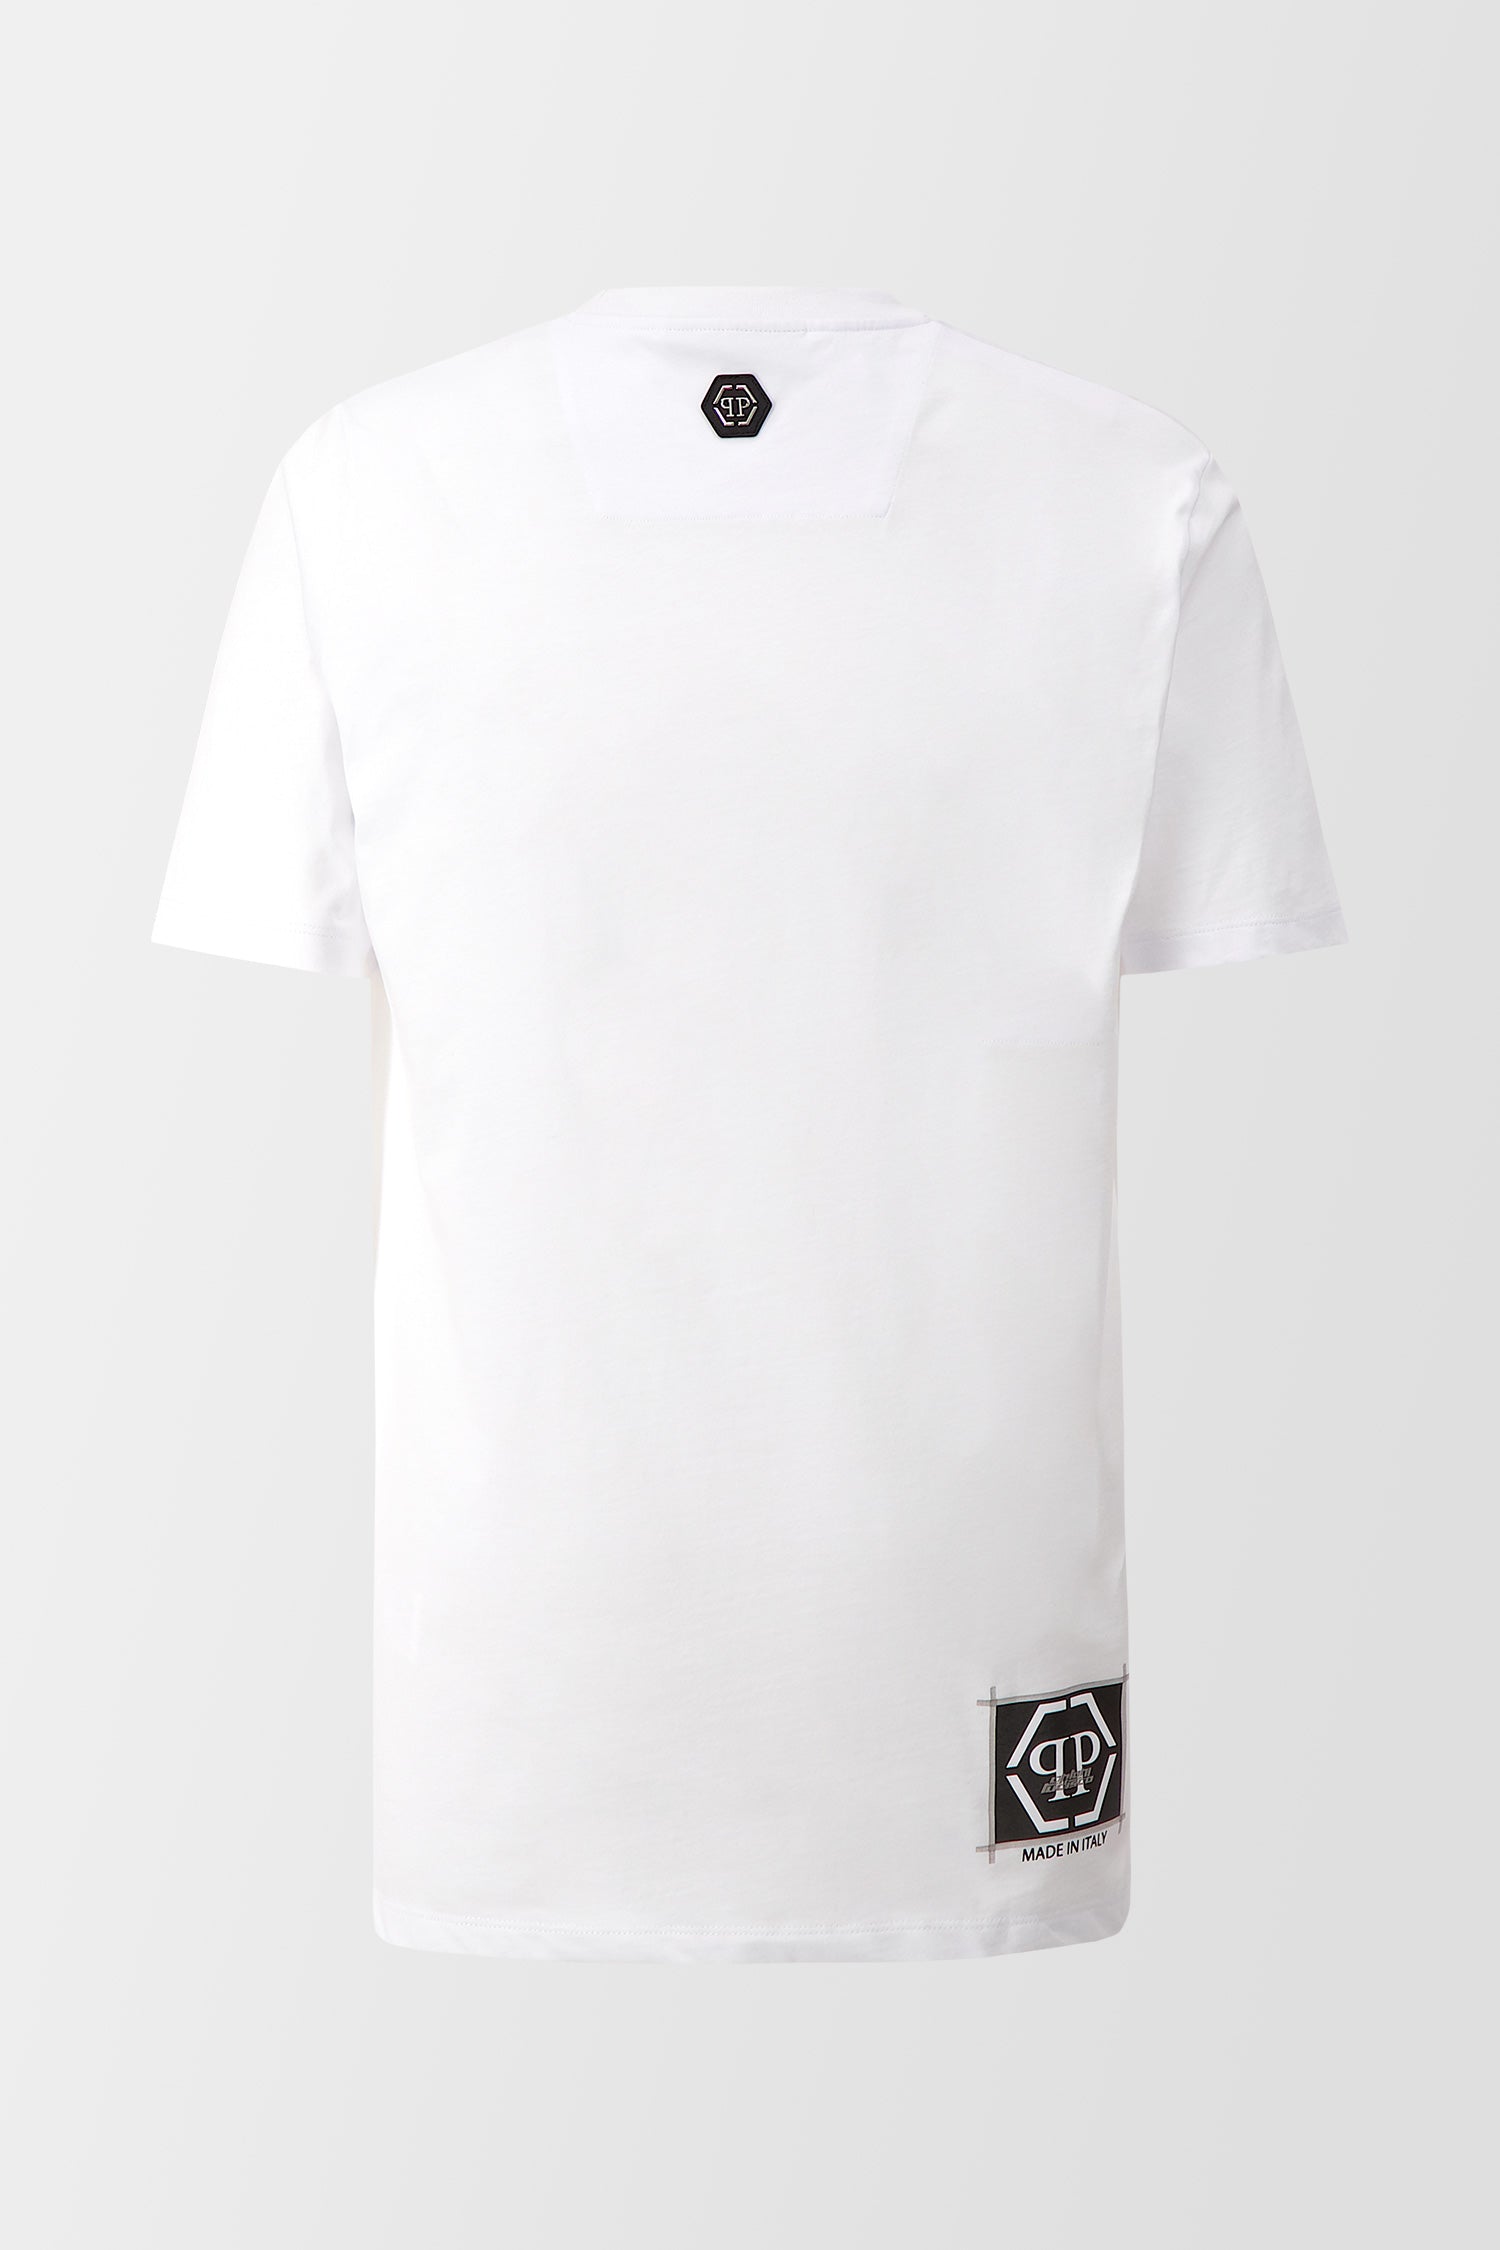 Philipp Plein White Round Neck SS PP Limited Dollar T-Shirt